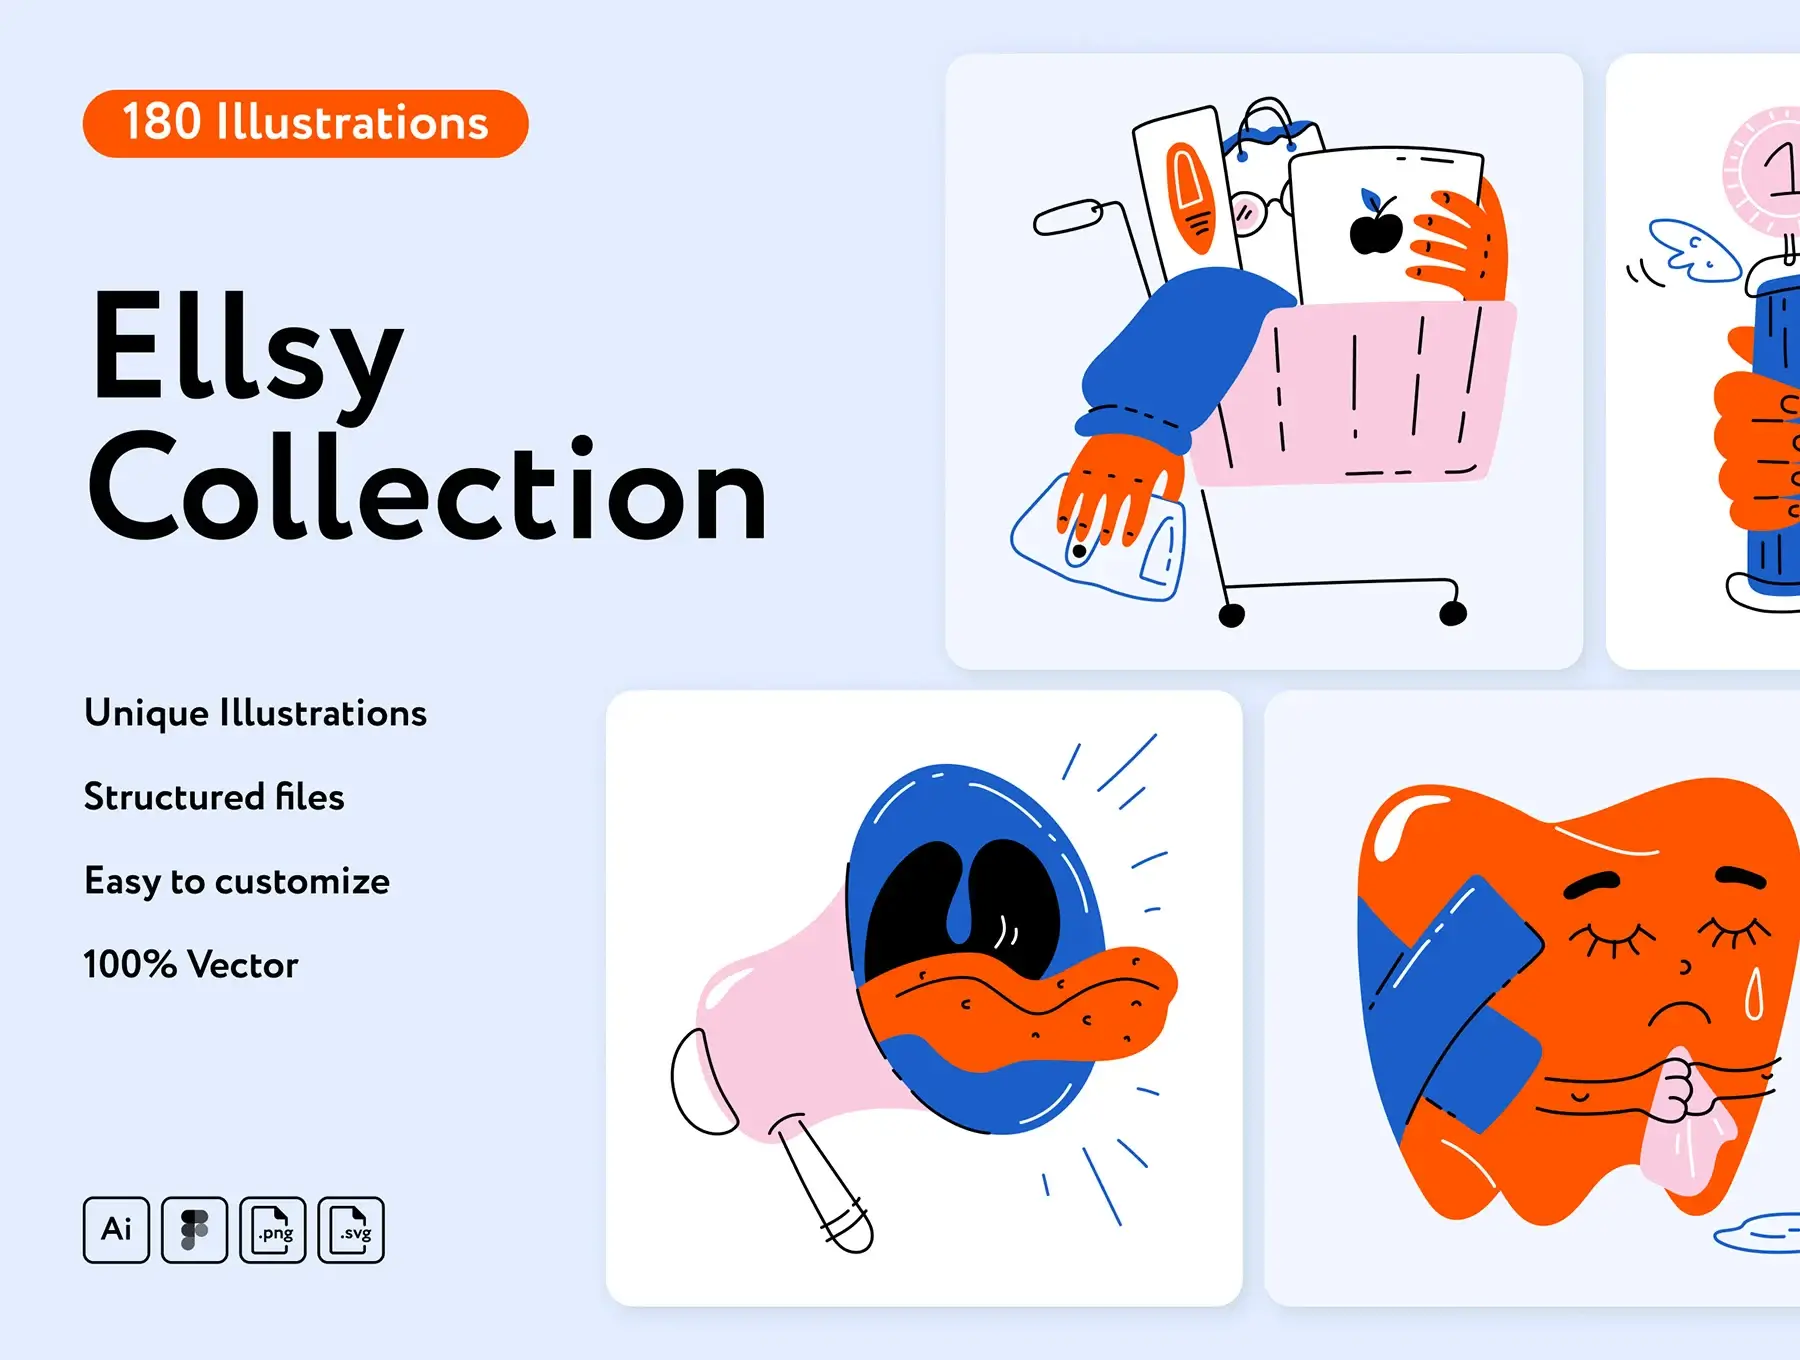 创意简约插图素材模板Ellsy Collection — Illustrations on UI8